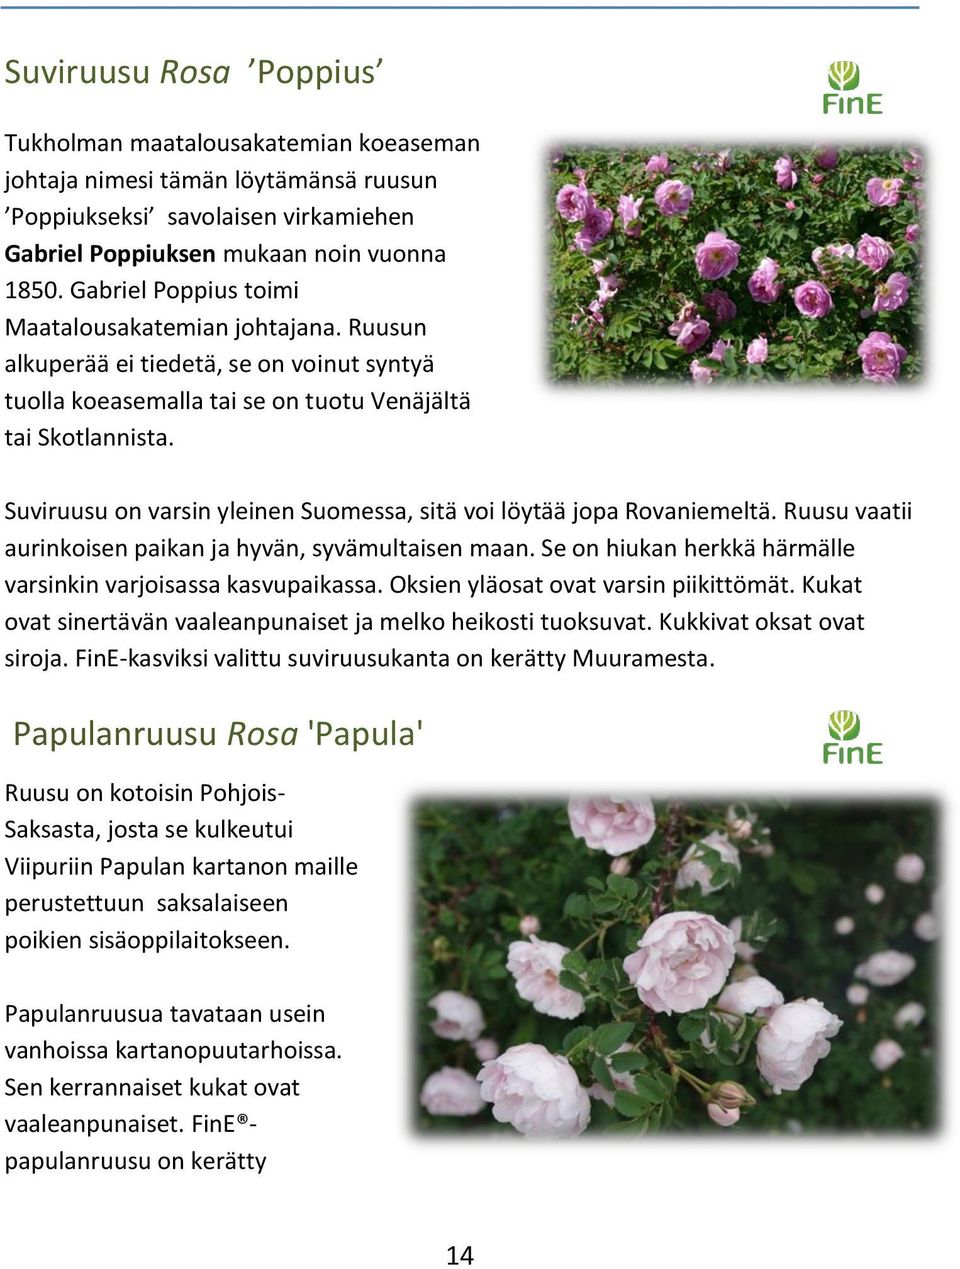 Suviruusu on varsin yleinen Suomessa, sitä voi löytää jopa Rovaniemeltä. Ruusu vaatii aurinkoisen paikan ja hyvän, syvämultaisen maan. Se on hiukan herkkä härmälle varsinkin varjoisassa kasvupaikassa.